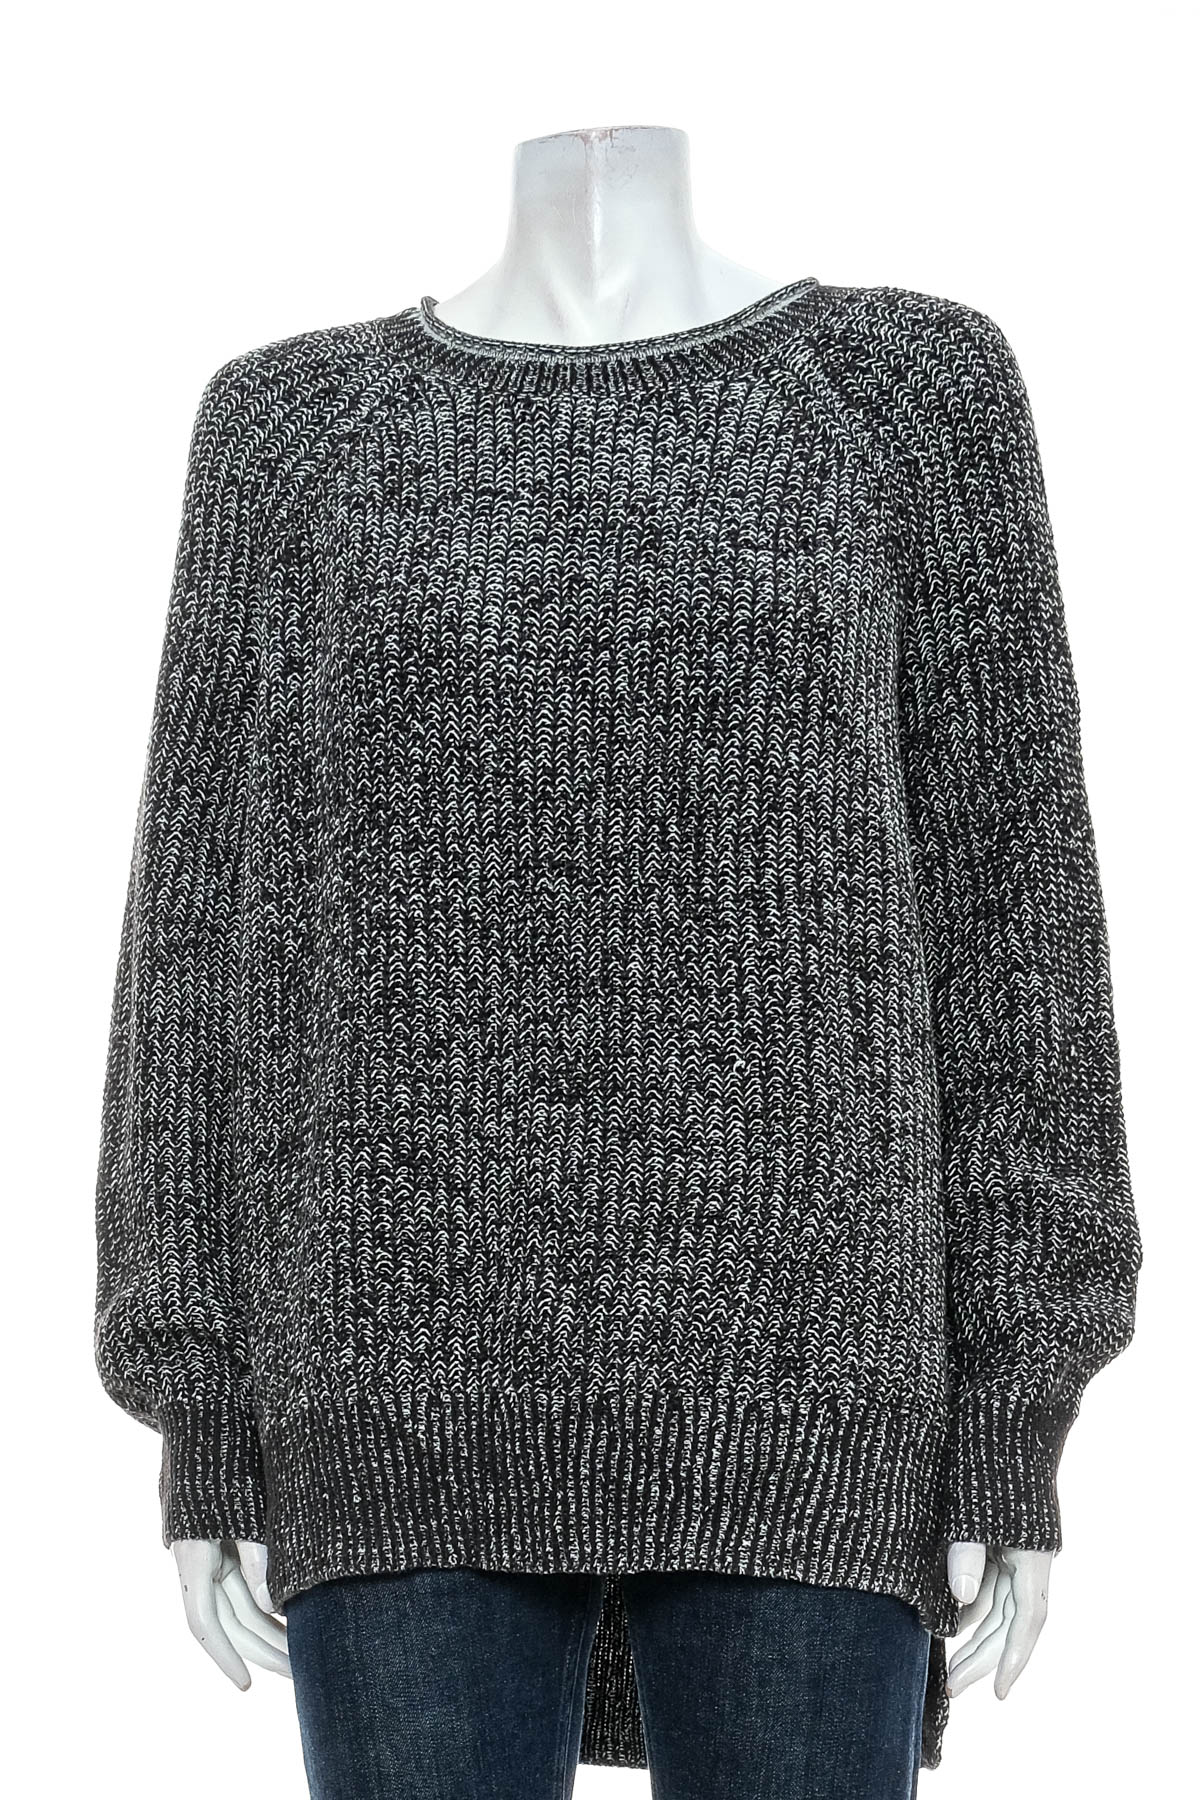 Women's sweater - ELLEN TRACY - 0